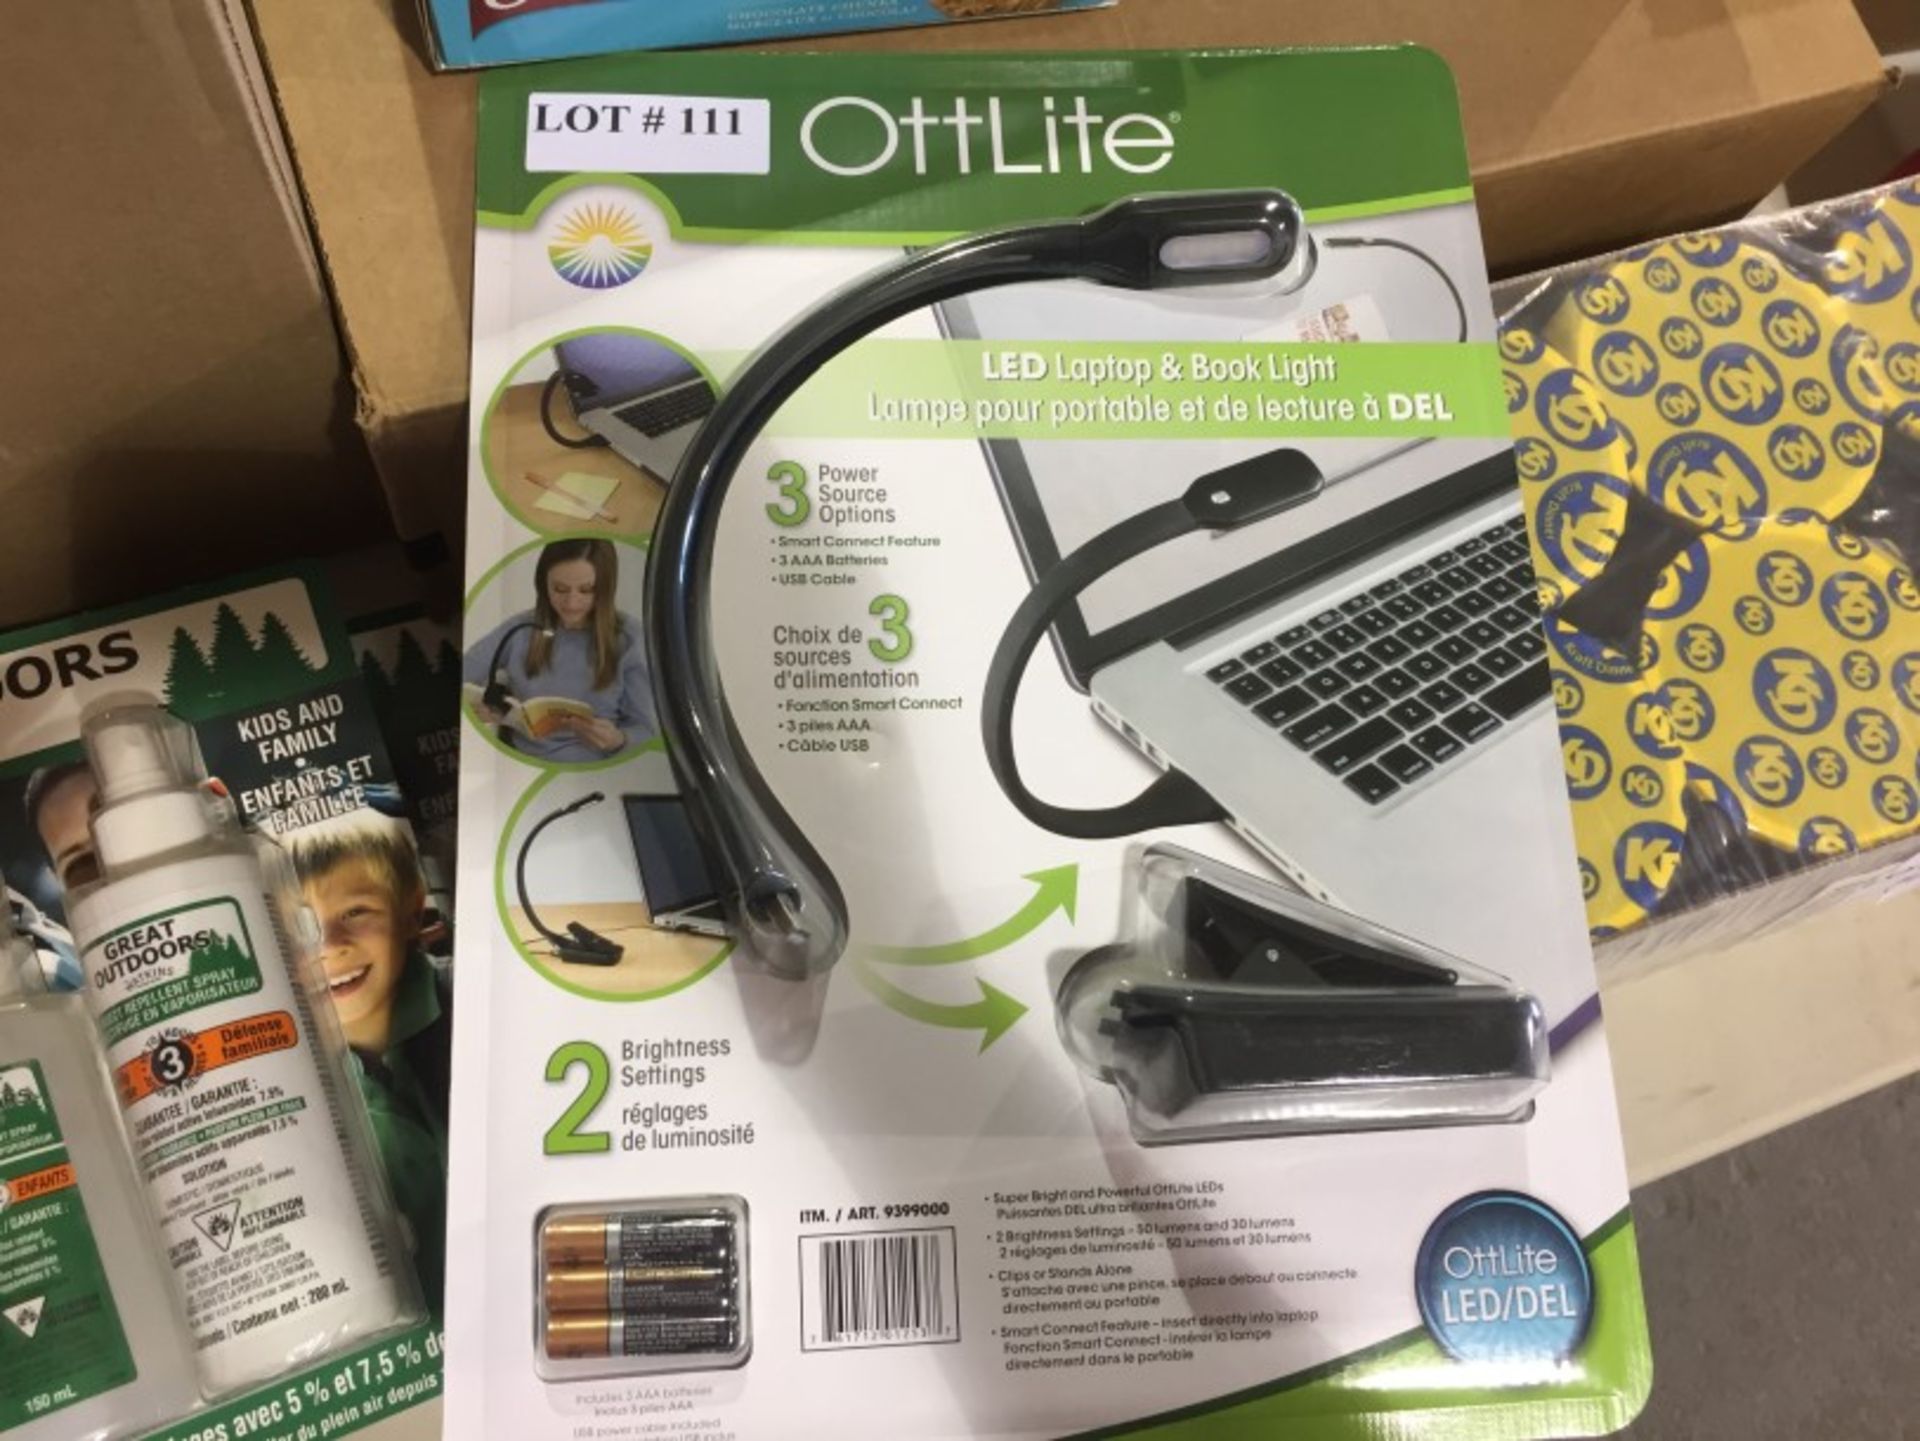 New Ottlite-LED Laptop & Booklite